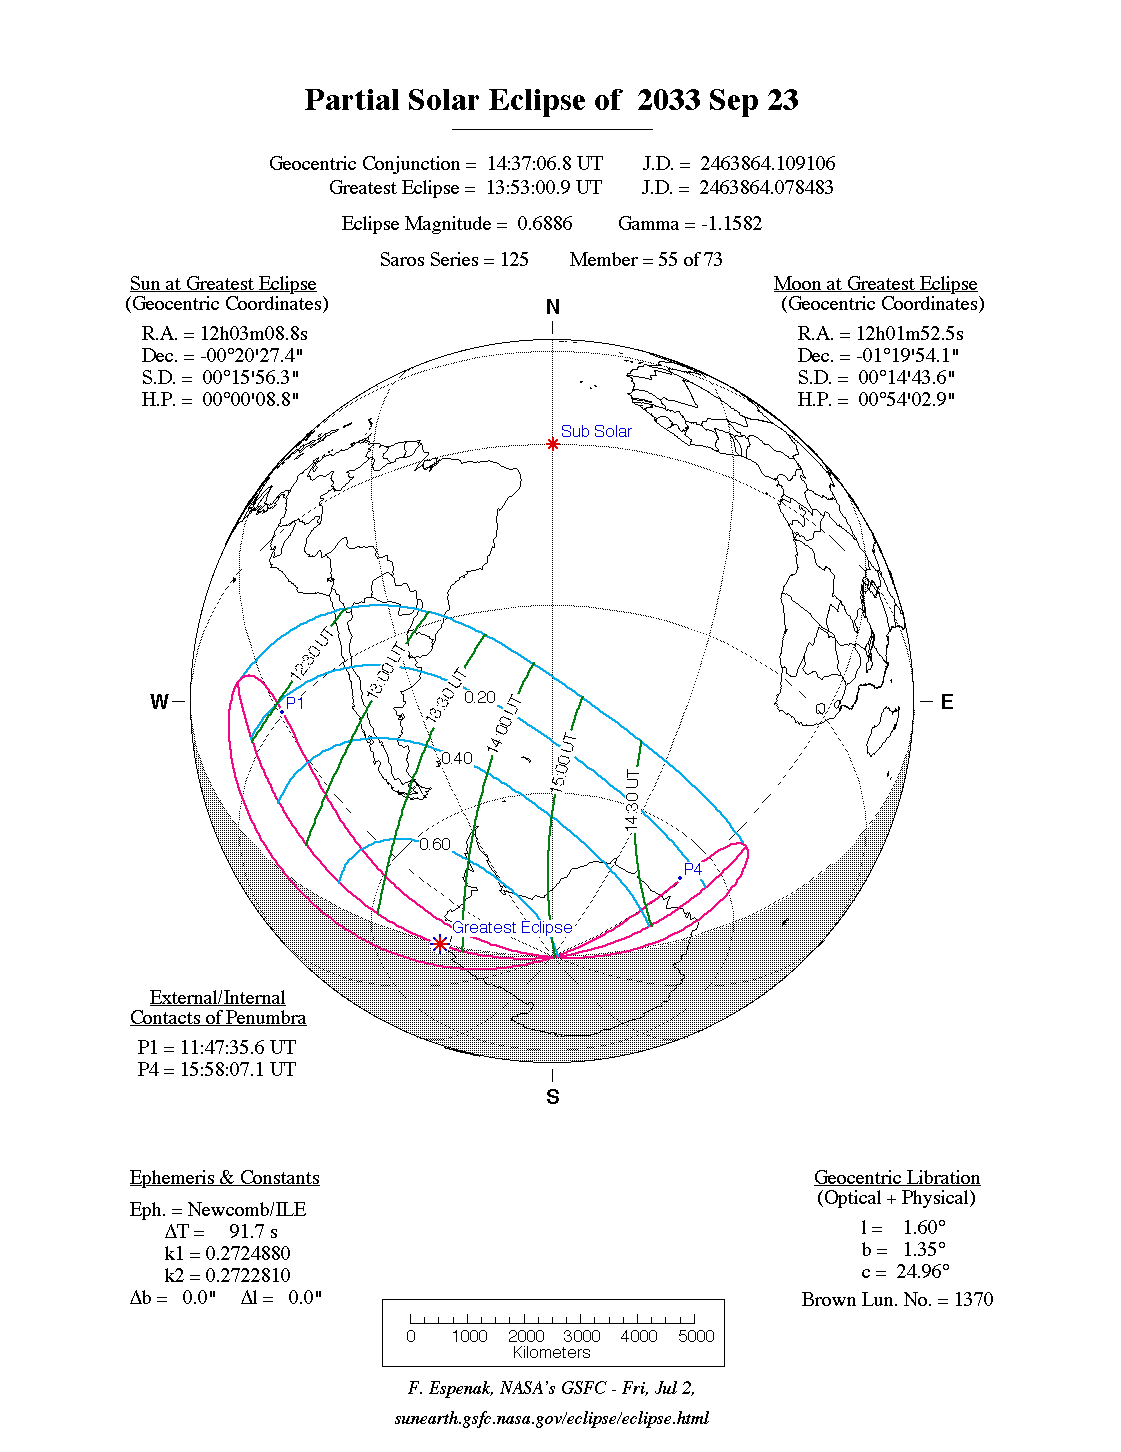 Verlauf der Partiellen Sonnenfinsternis am 23.09.2033